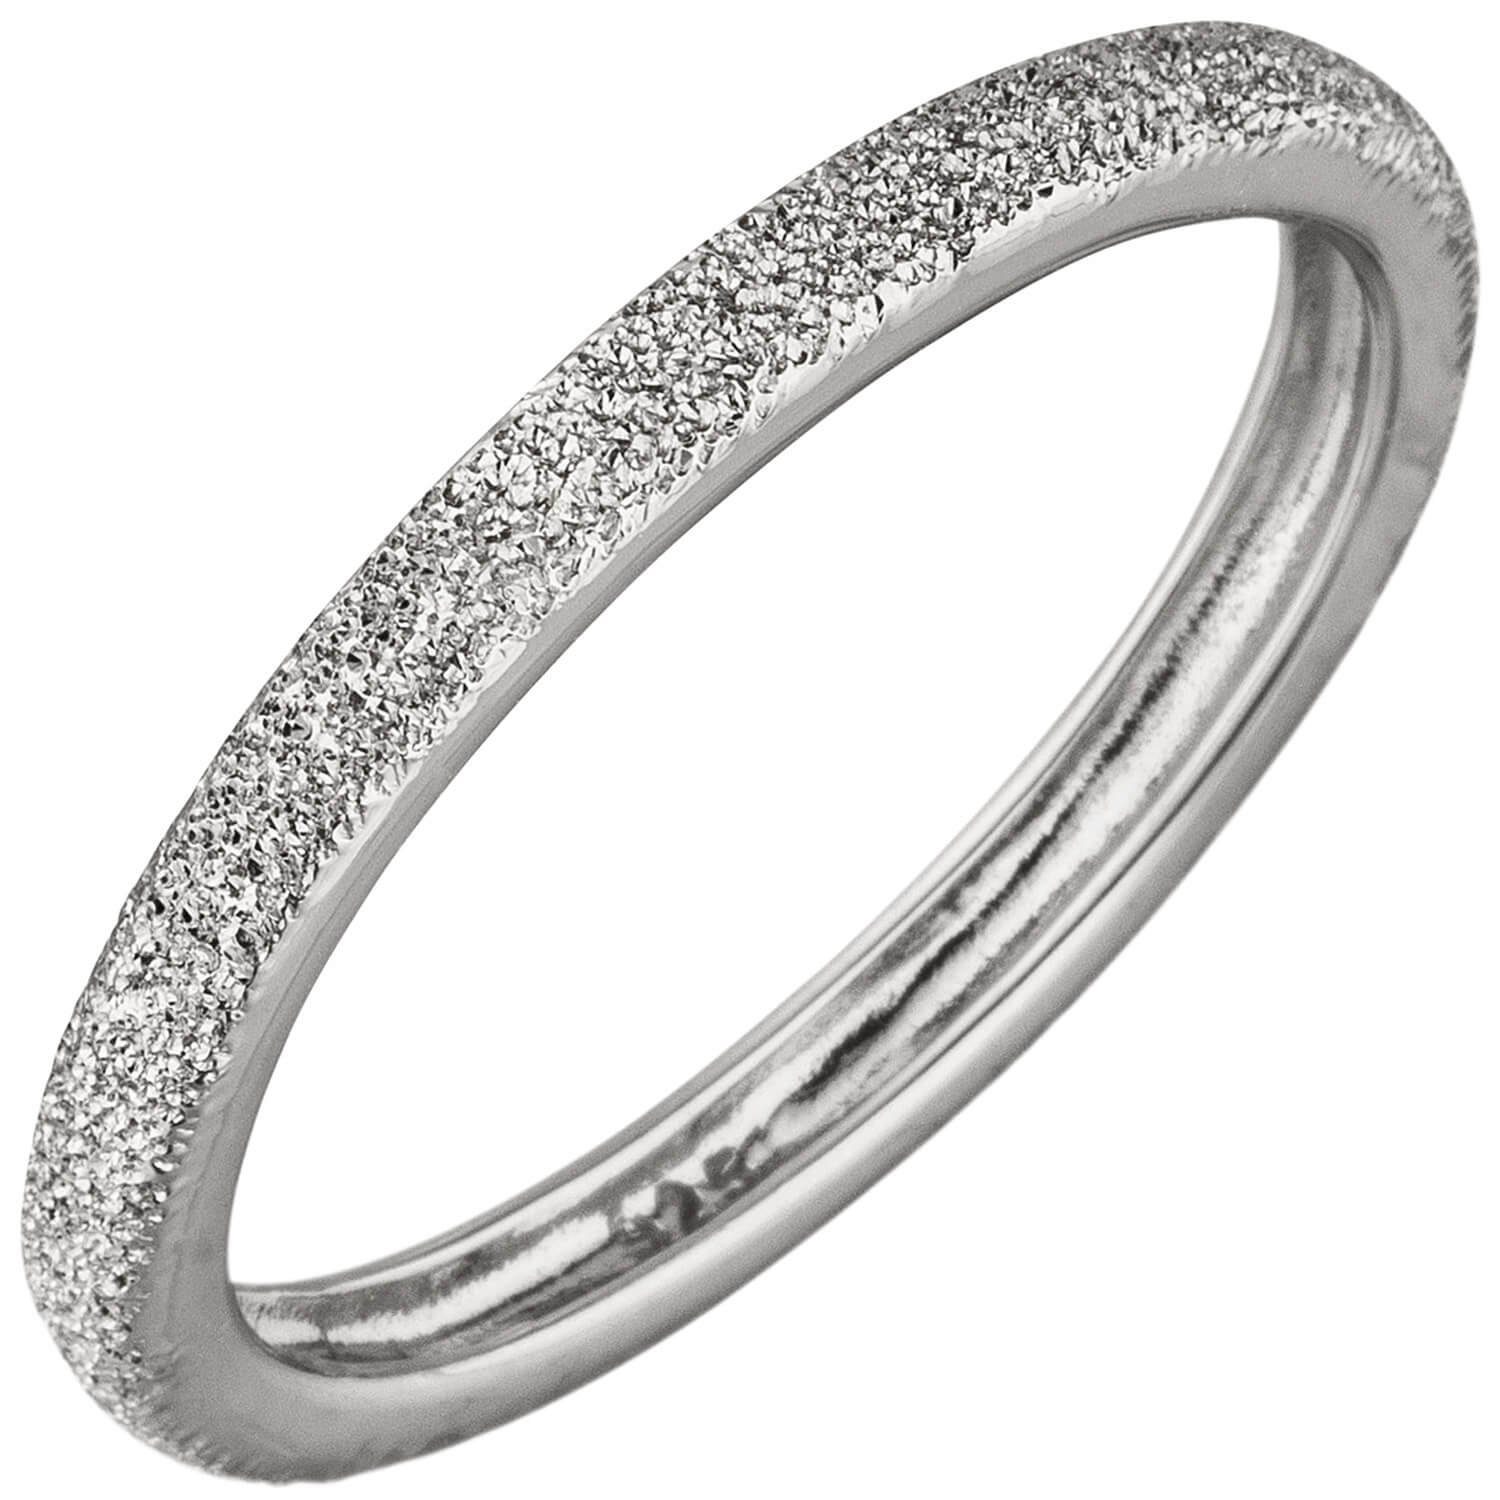 Schmuck Krone Silberring Ring Damenring aus 925 Silber mit Sternenstaub Struktur flach 2,2mm schmal, Silber 925